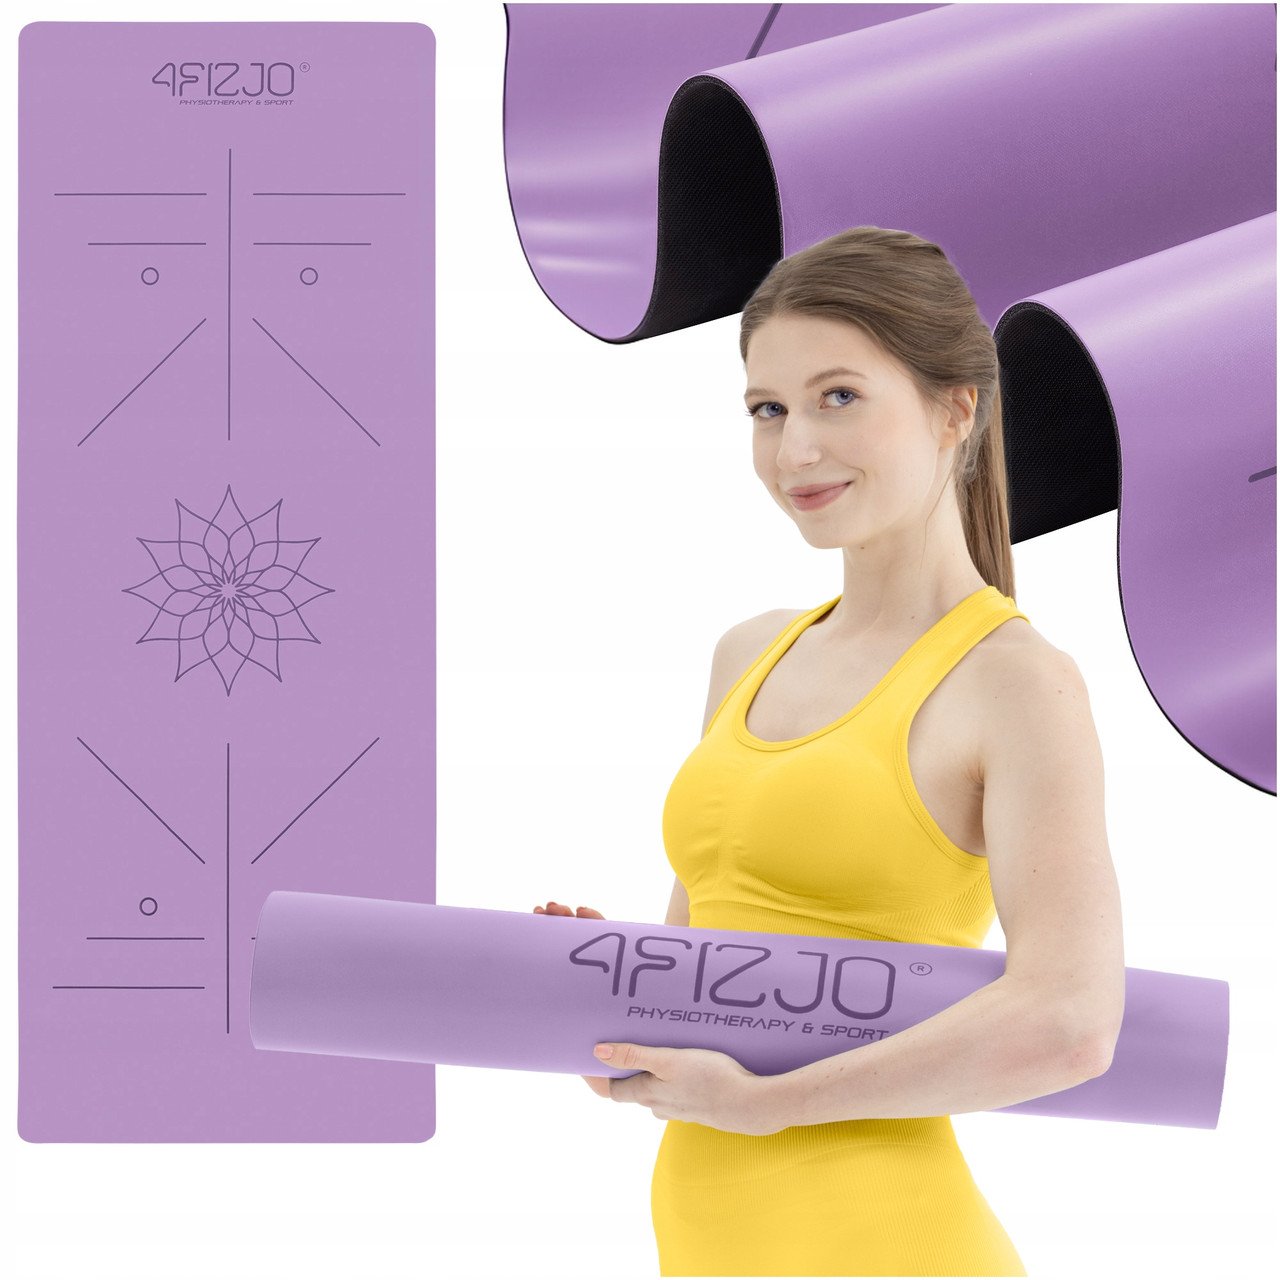 Килимок (мат) спортивний 4FIZJO PU 183 x 68 x 0.4 см для йоги та фітнесу 4FJ0589 Violet,  ml, 4FIZJO. Fitness Products. 